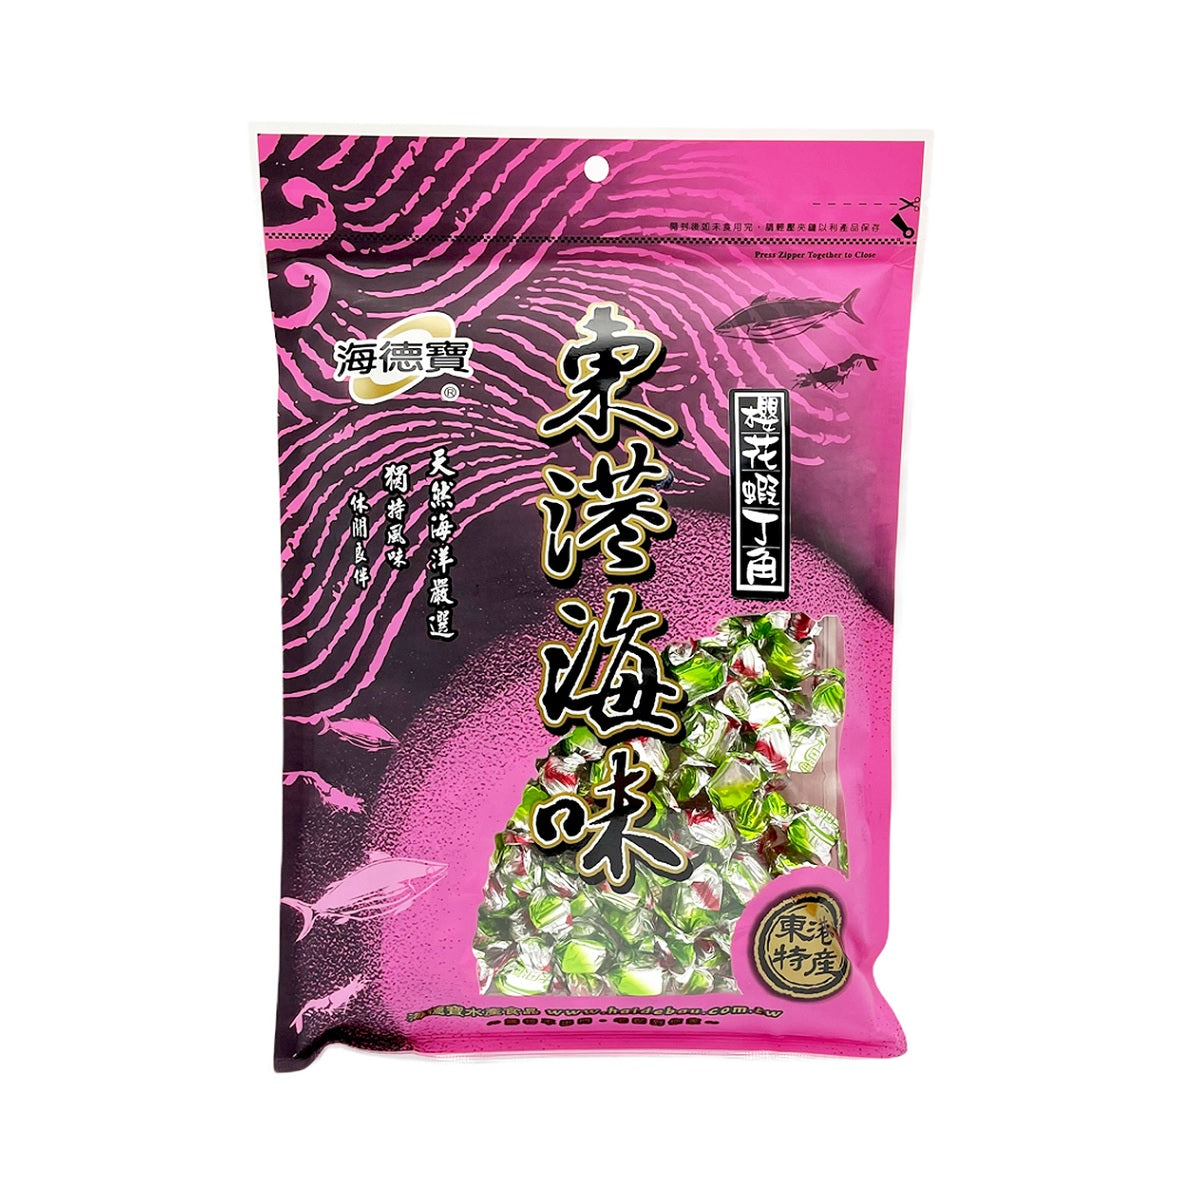 【HAI DE BAU】 Dried Sakura Diced Shrimp Snacks 150g